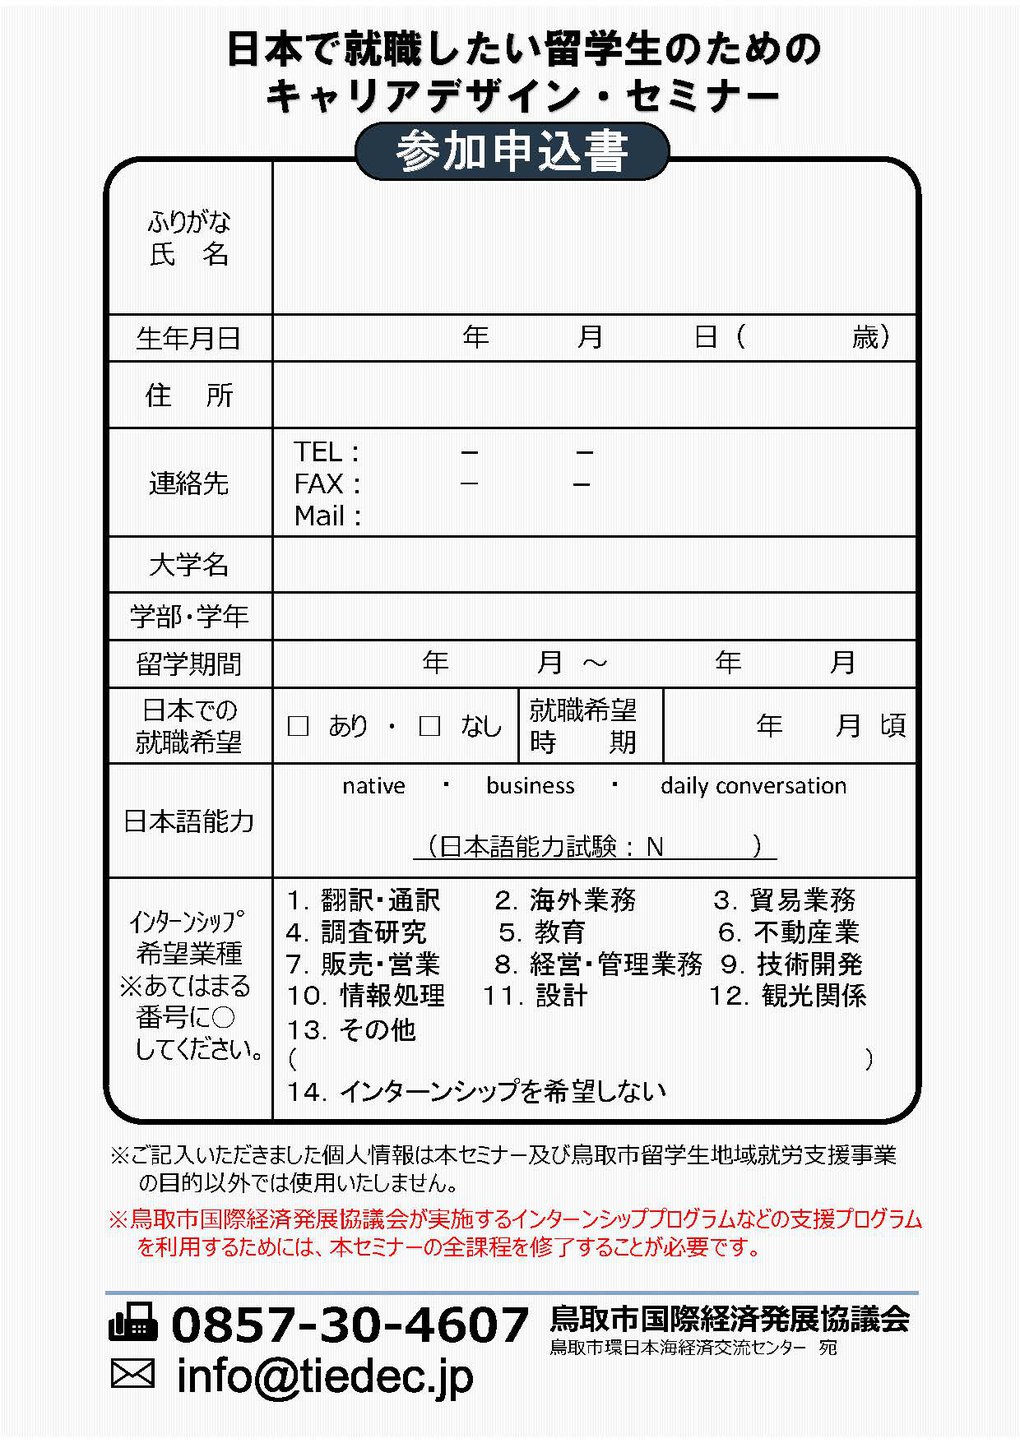 キャリア教育セミナー(裏)301222-23【修正】.jpg